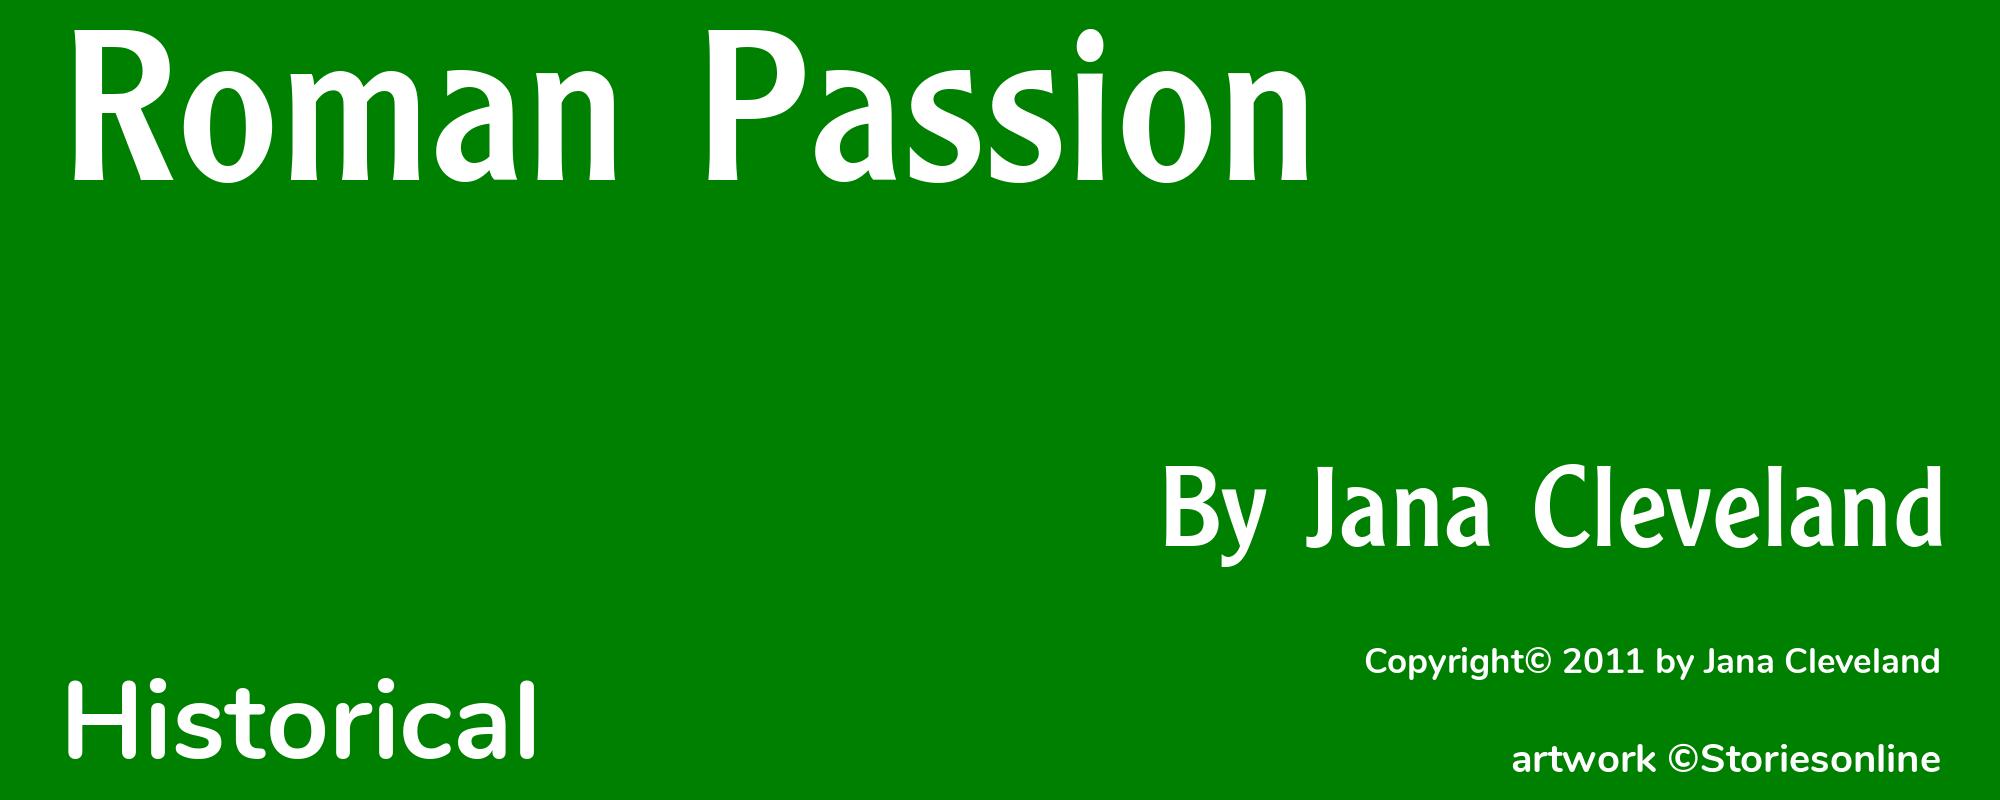 Roman Passion - Cover